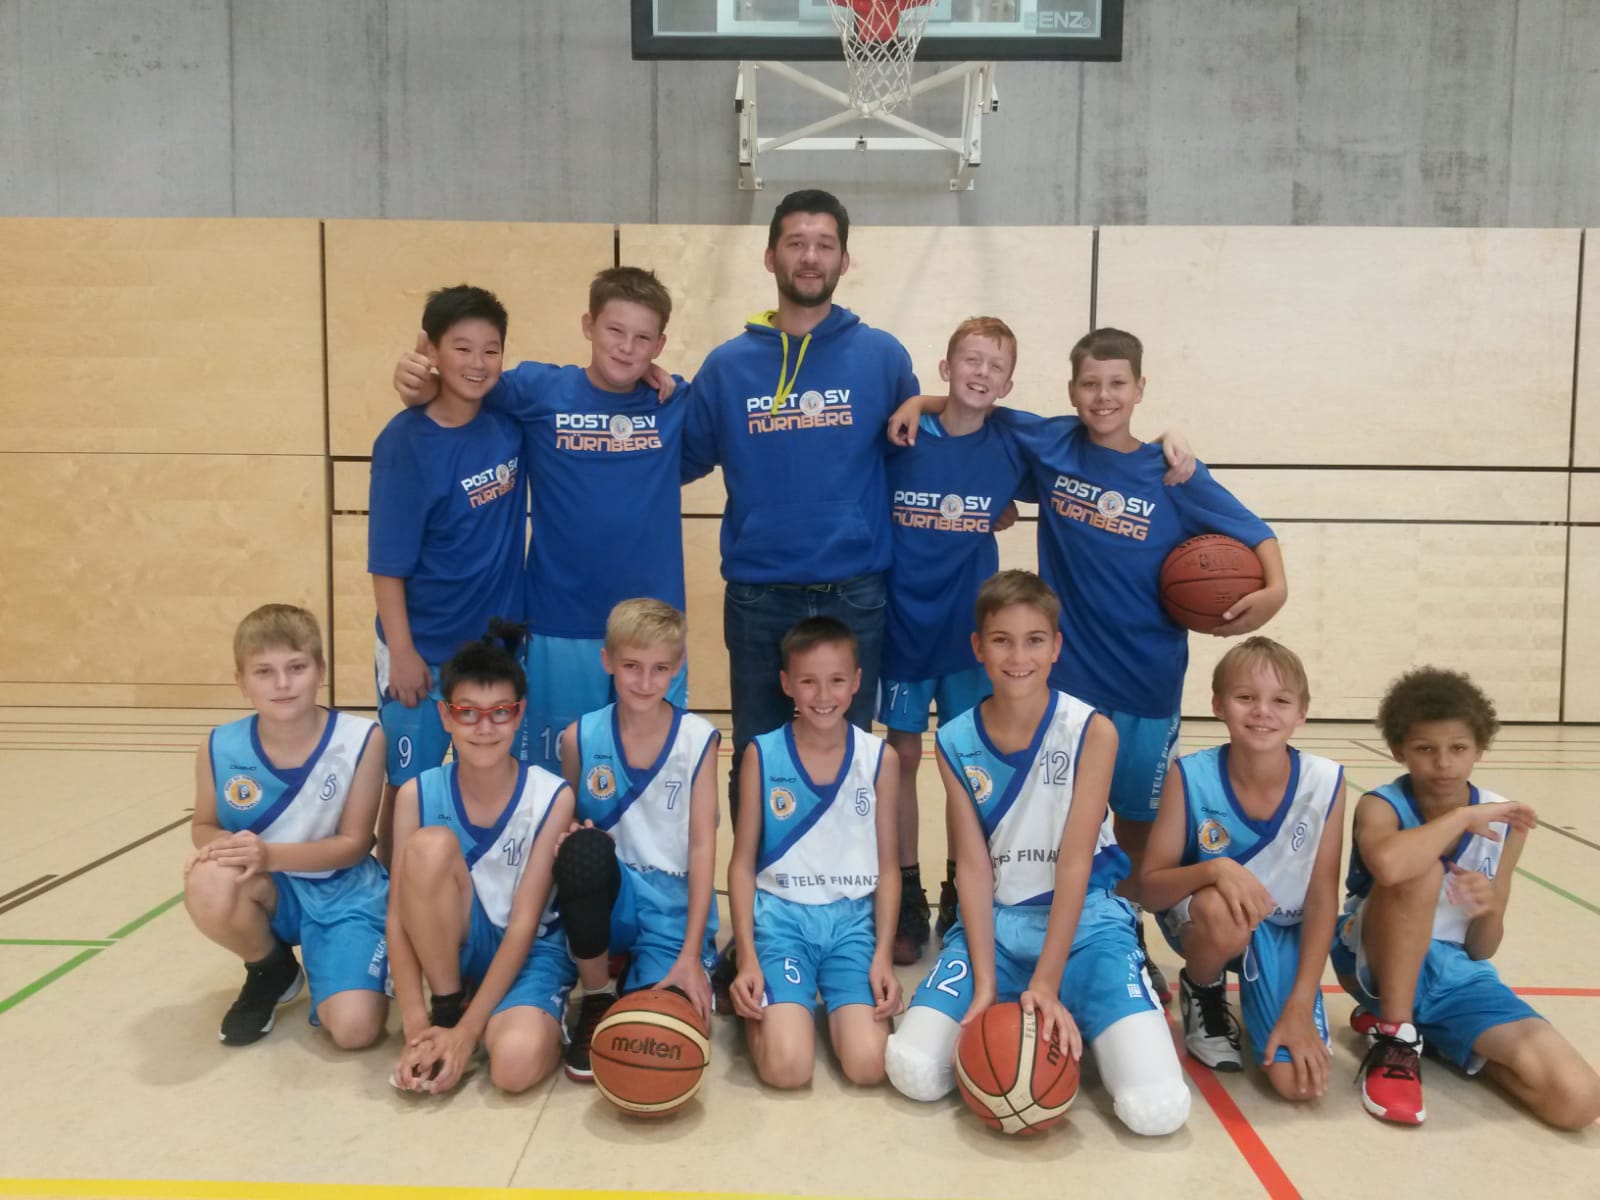 Zweiter Platz für U12 Post SV Nürnberg beim Mini-Basketball-Turnier